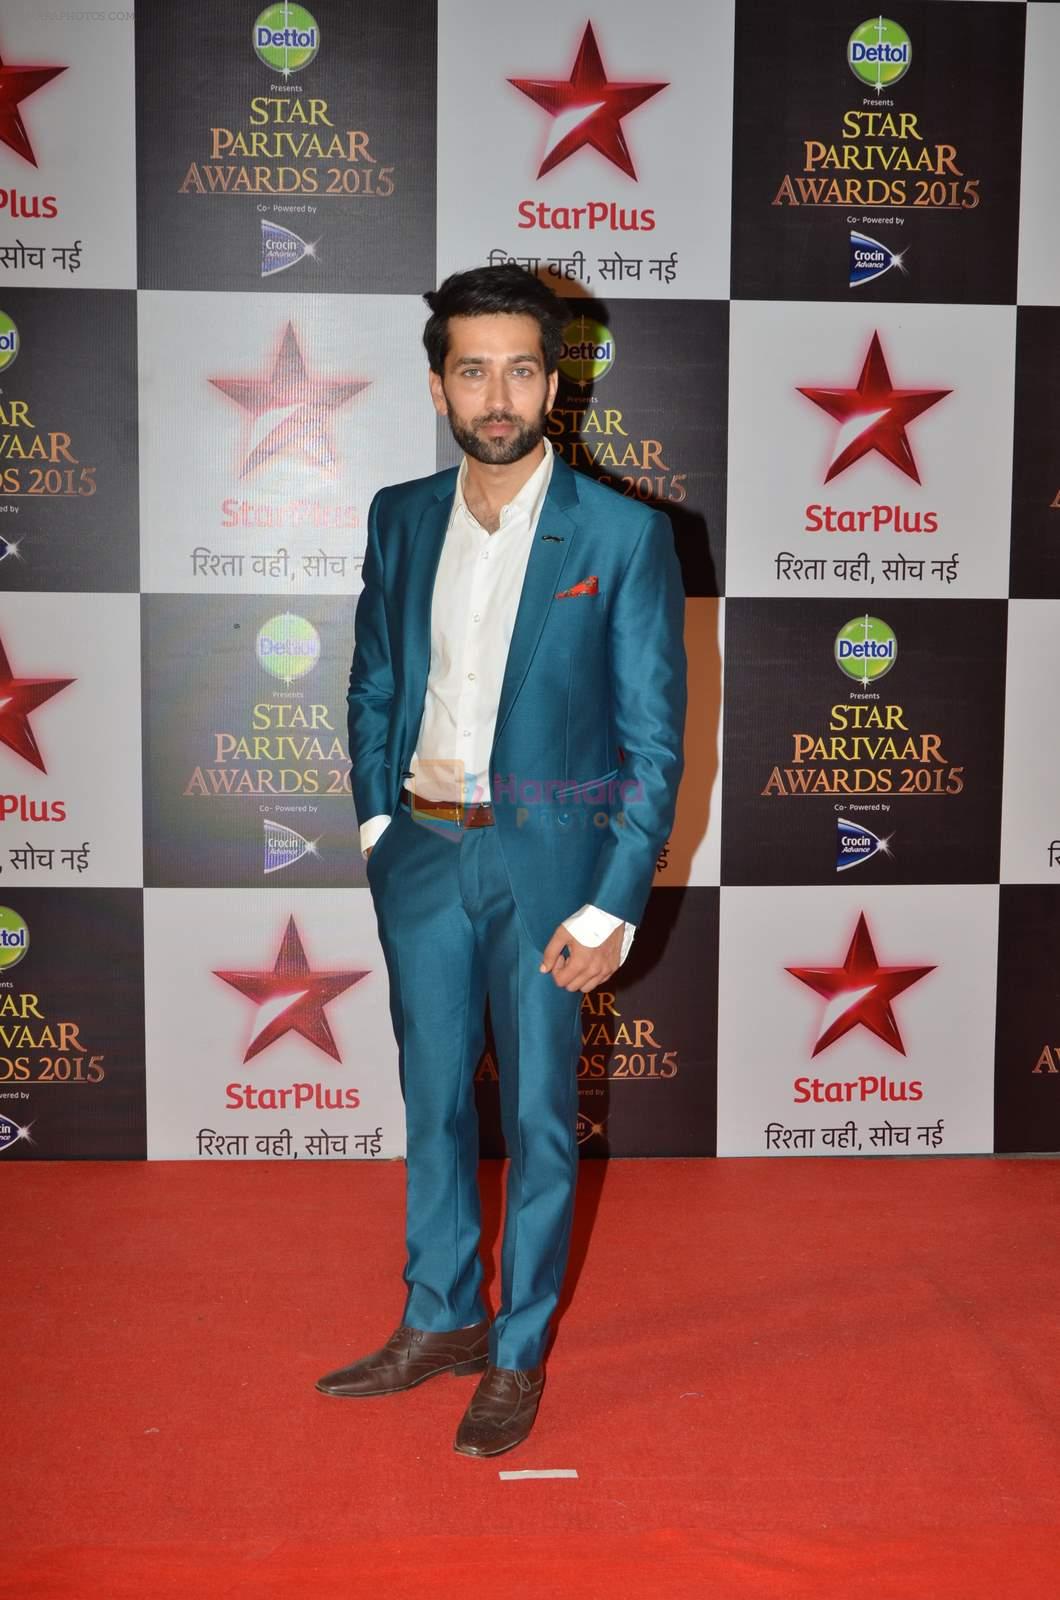 Nakuul Mehta at Star Pariwar Awards in Mumbai on 17th May 2015